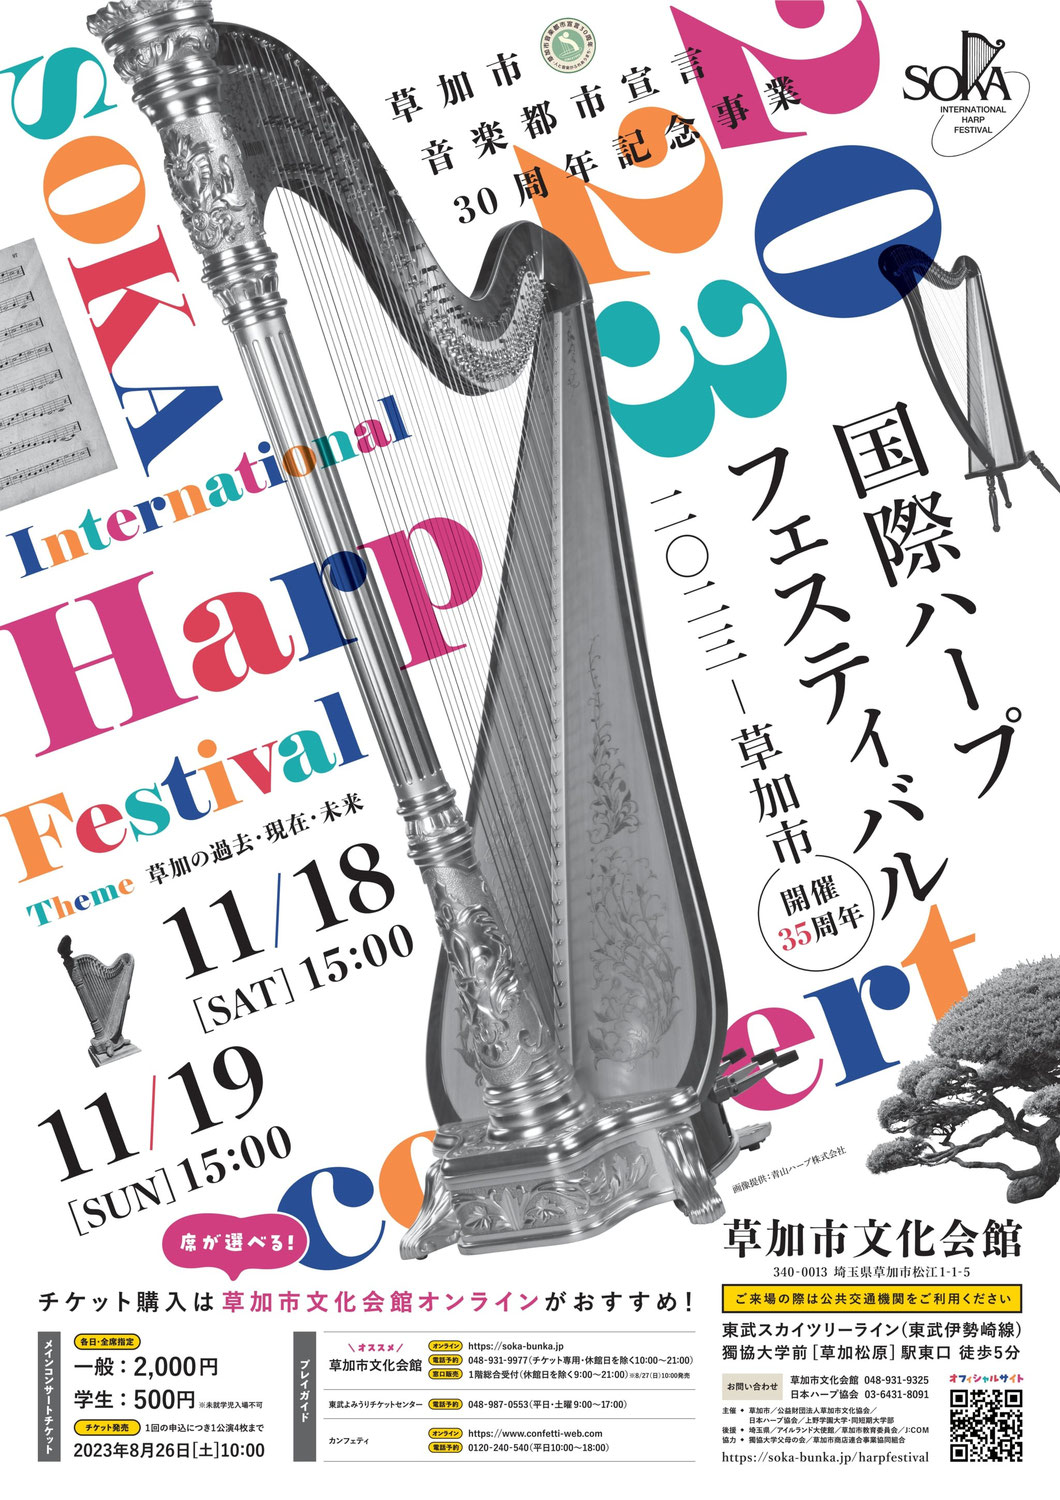 2023/11/19 『国際ハープフェスティバル2023』にて演奏します。